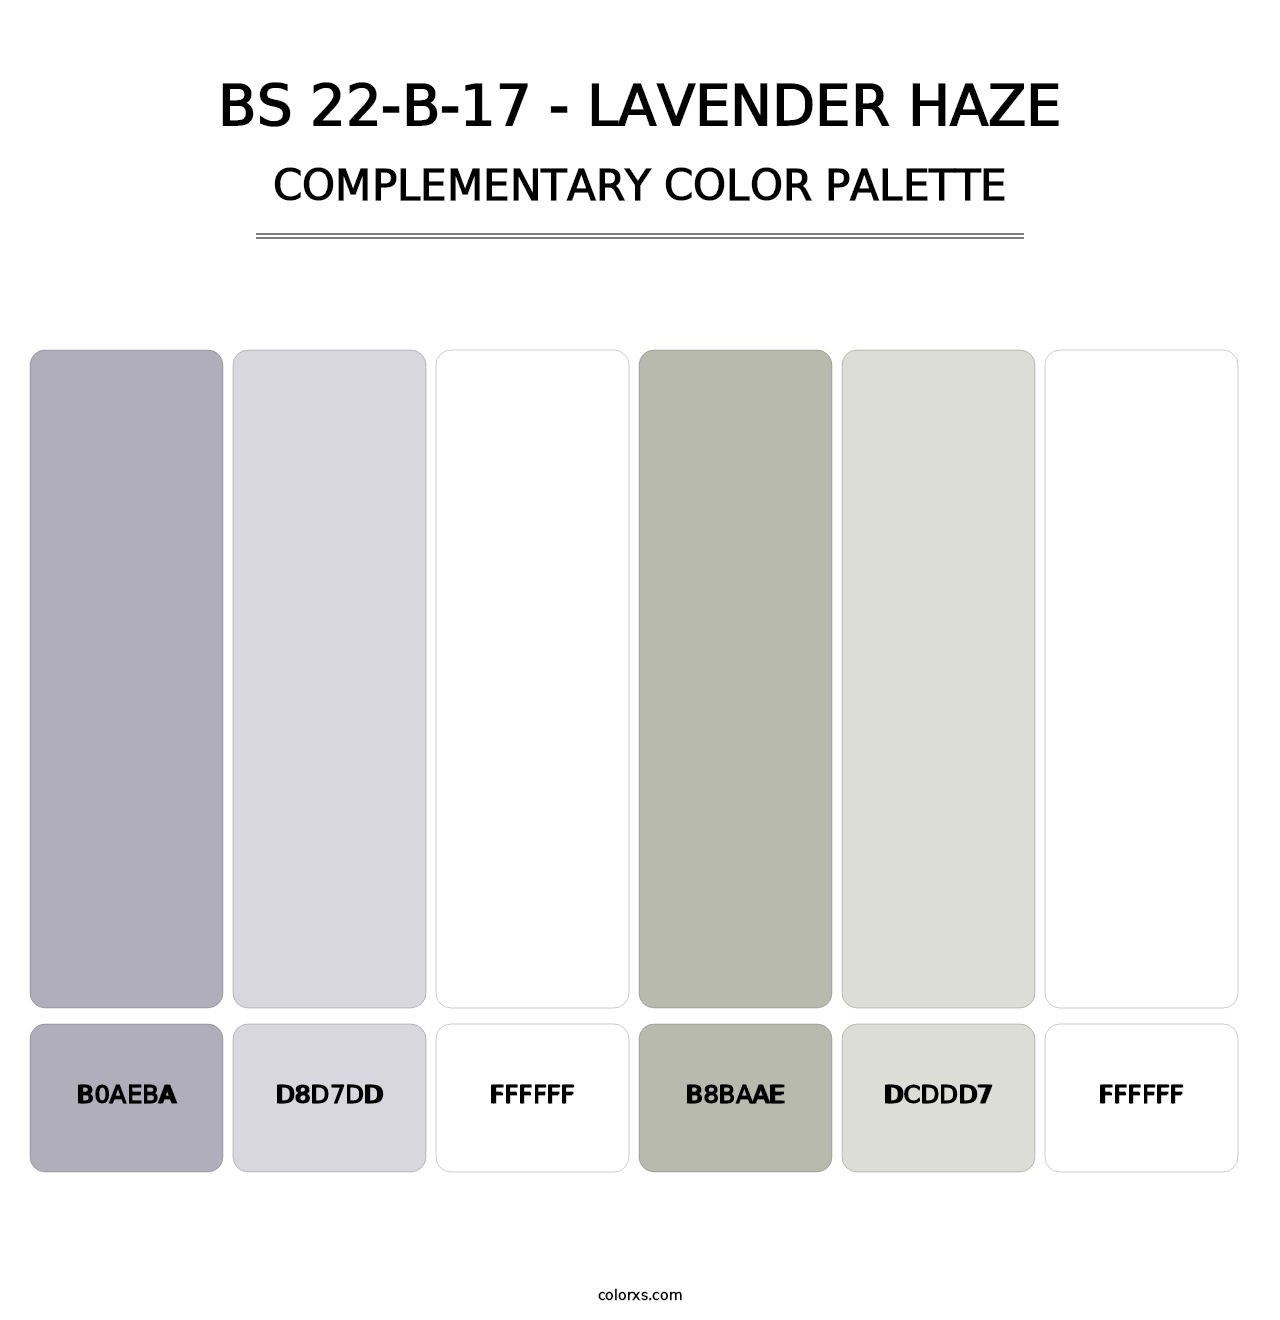 BS 22-B-17 - Lavender Haze - Complementary Color Palette